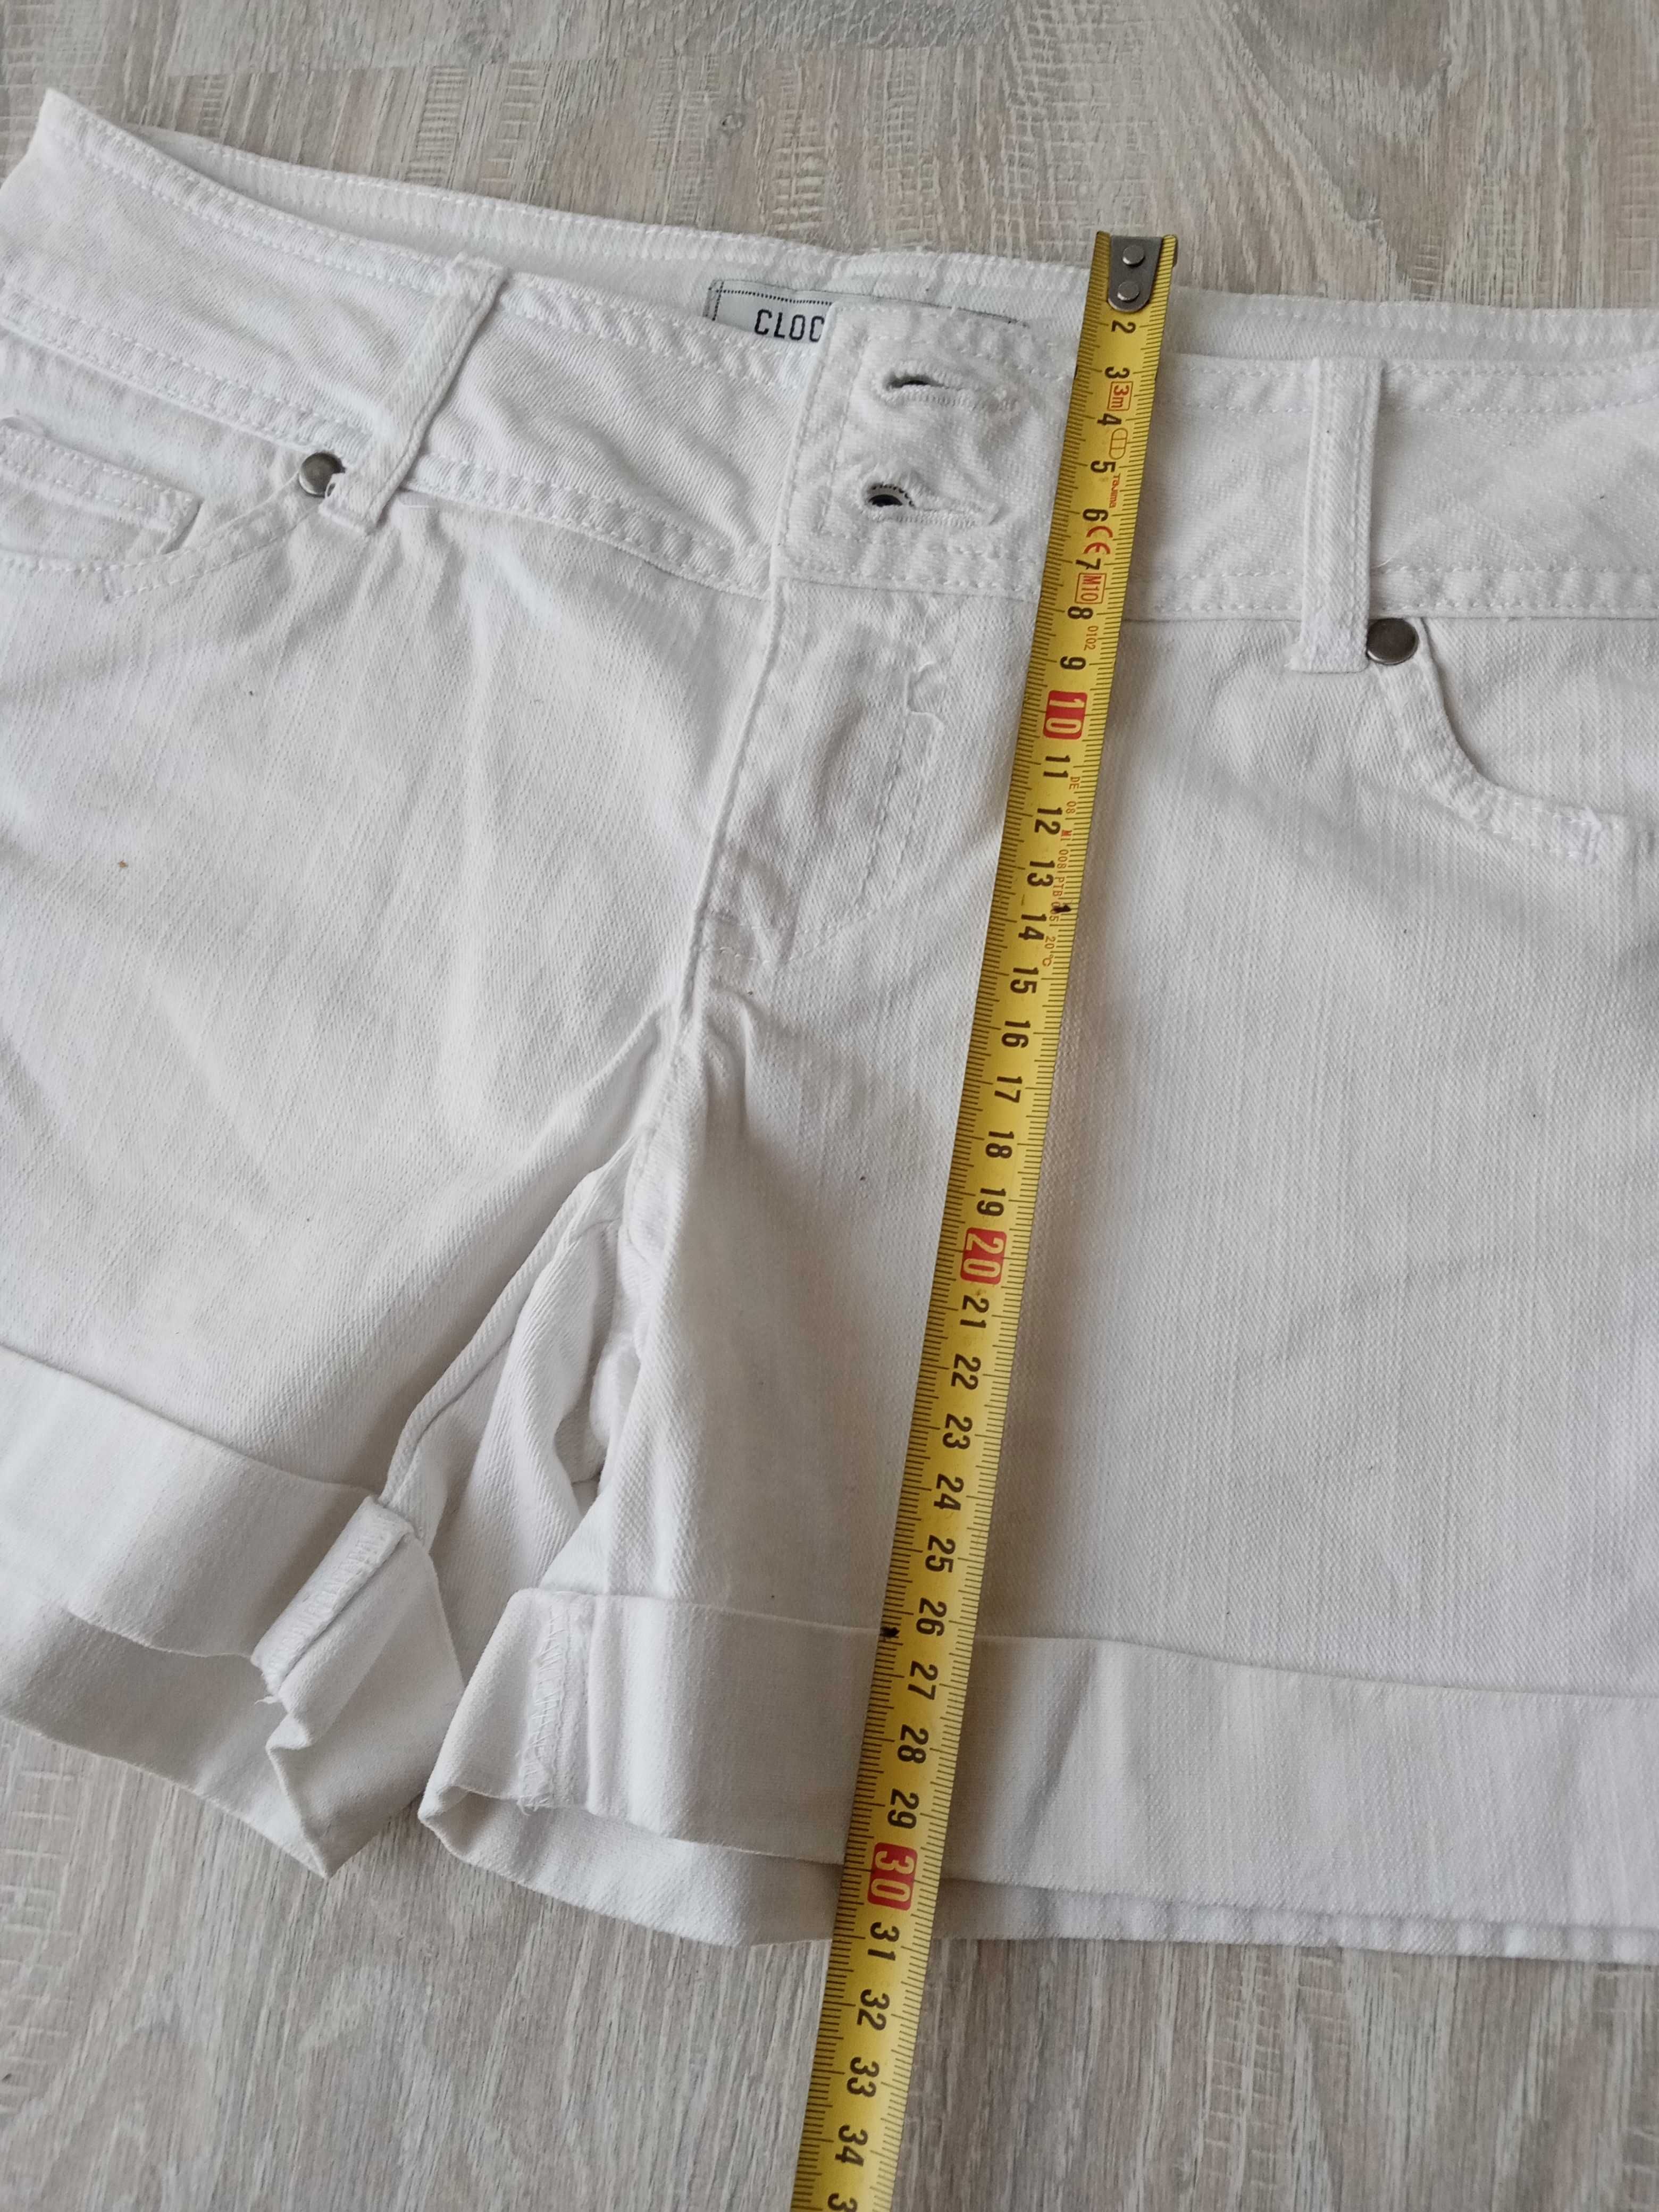 Szorty białe jeans Clockhouse C&A rozmiar 36